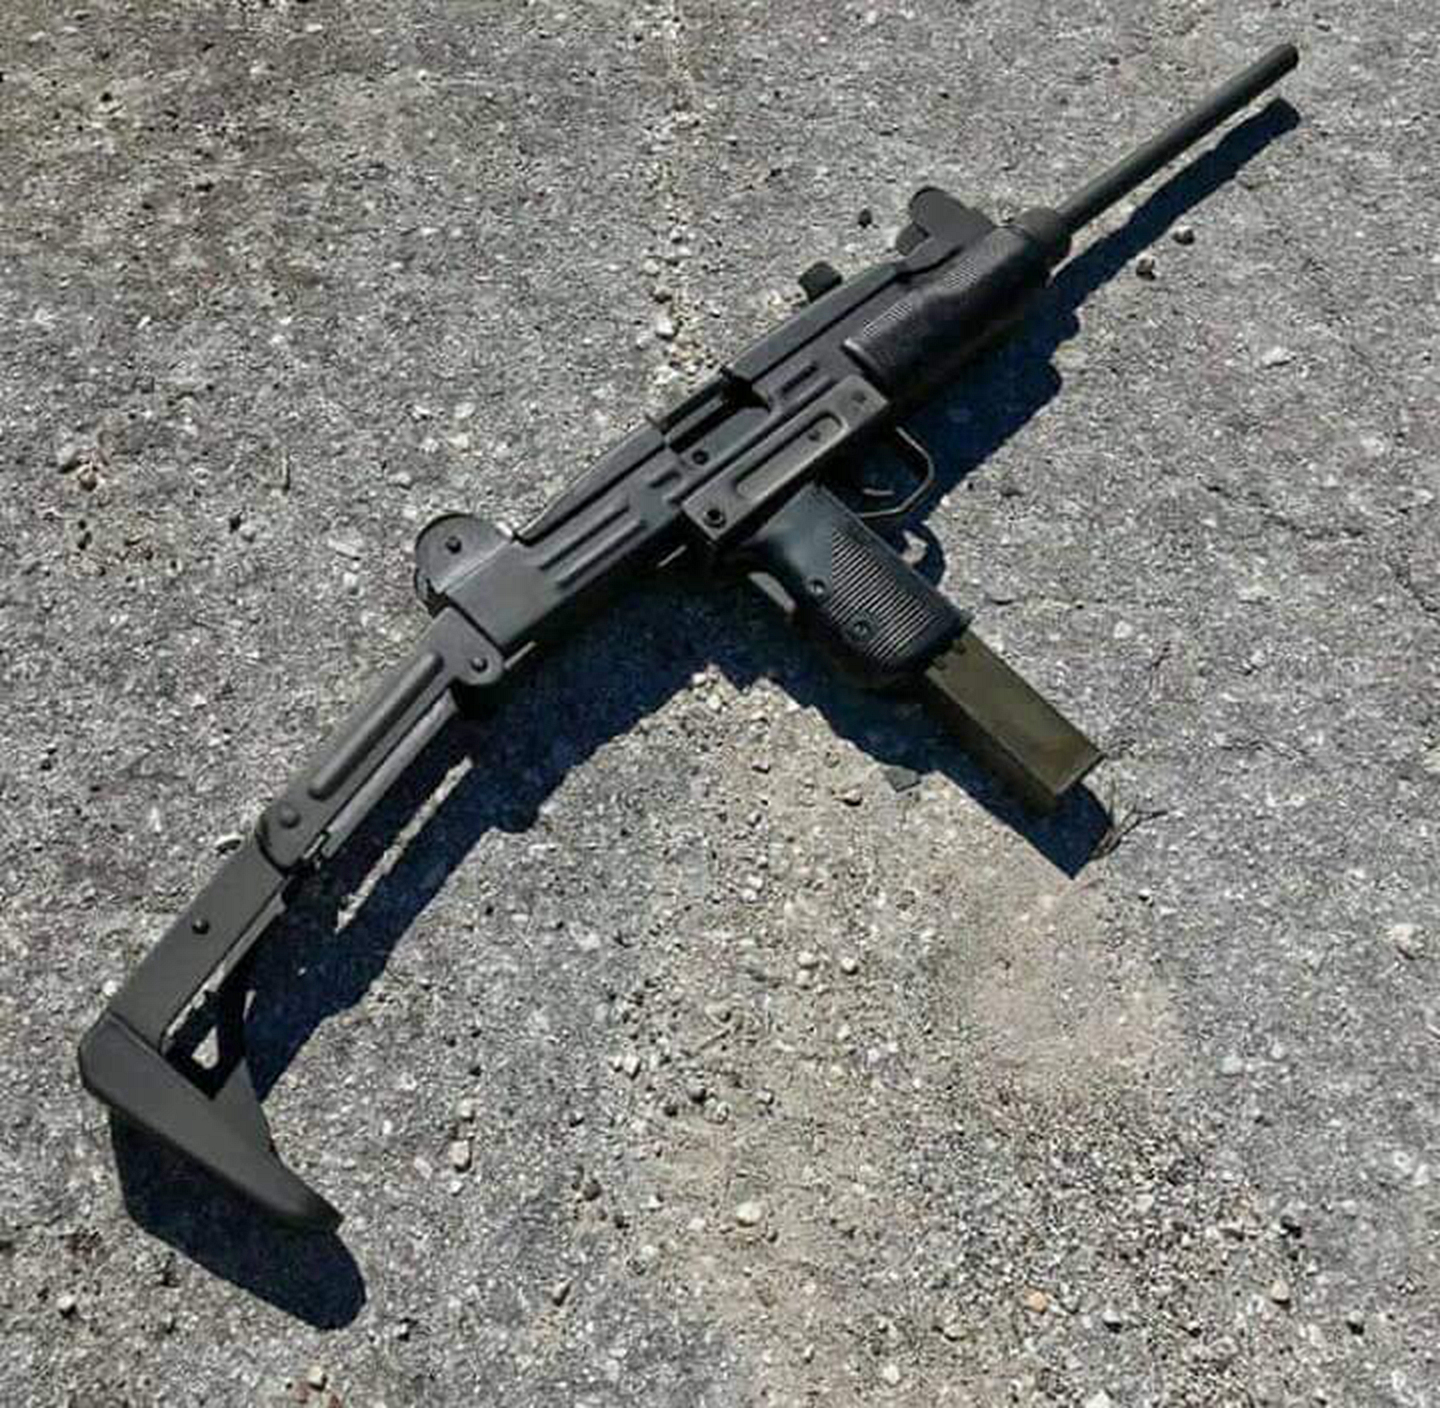 1/ 12 uzi冲锋枪 skorpion vz 61冲锋枪 as"val"特种突击步枪 hk usc